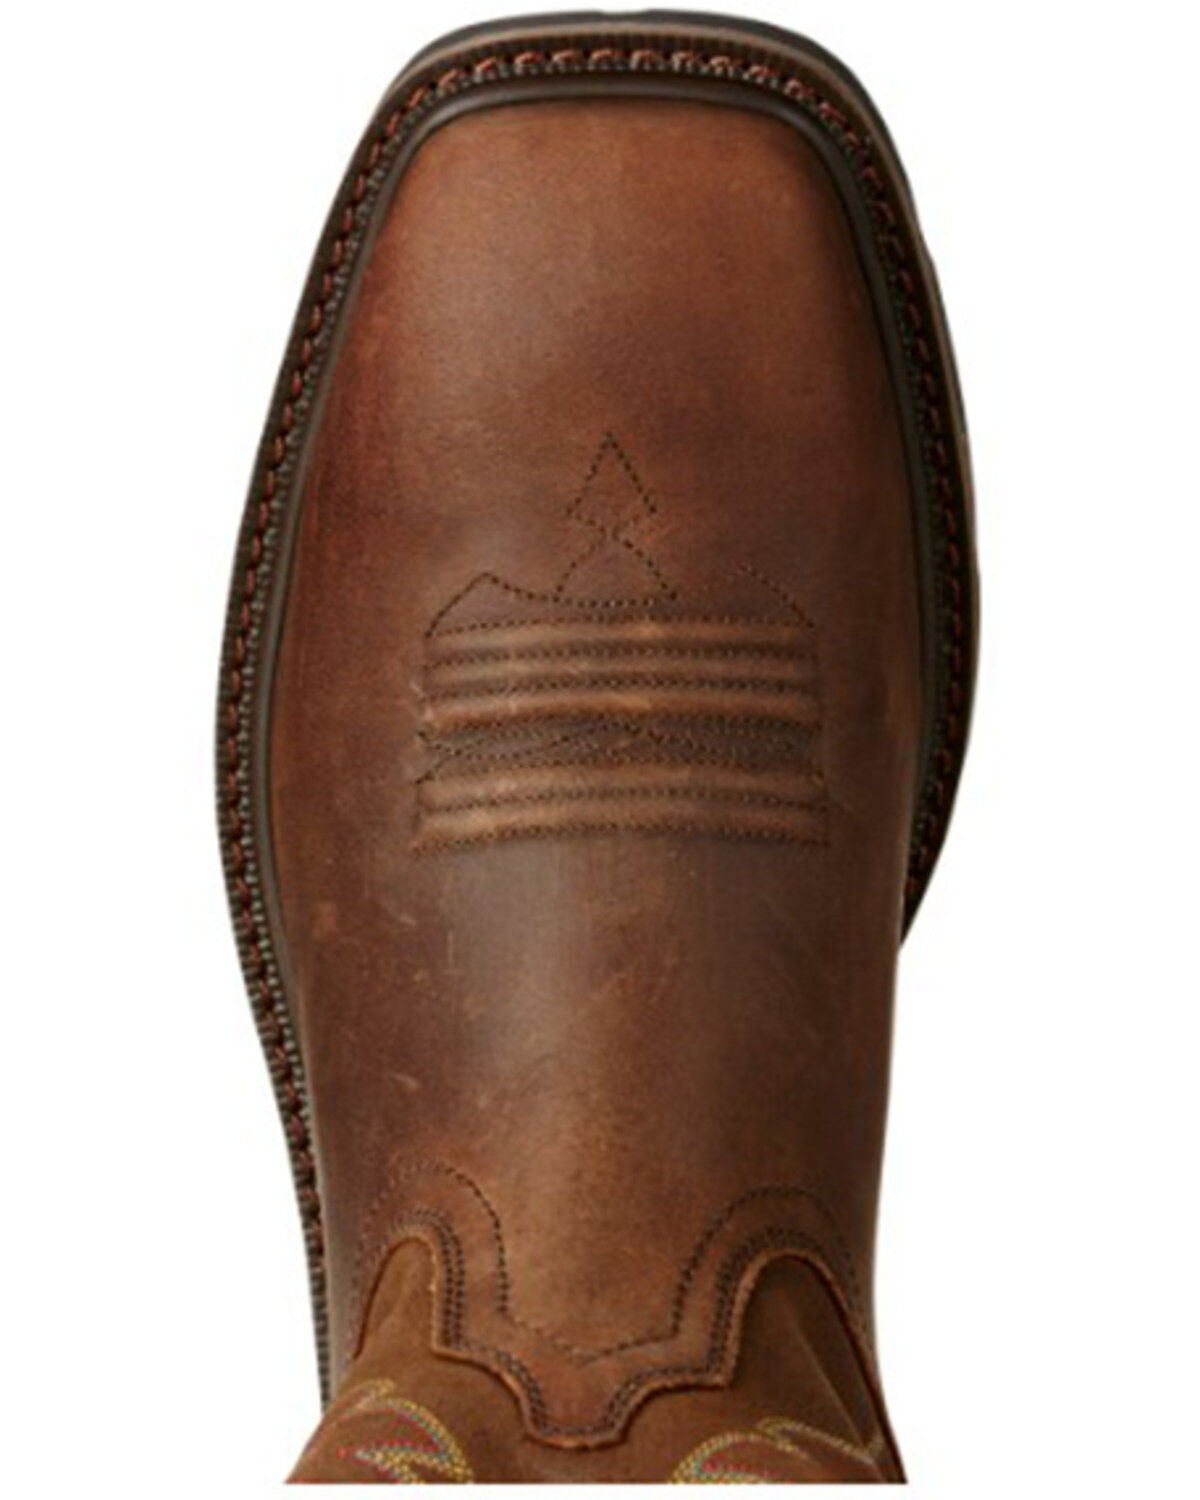 black slip resistant cowboy boots